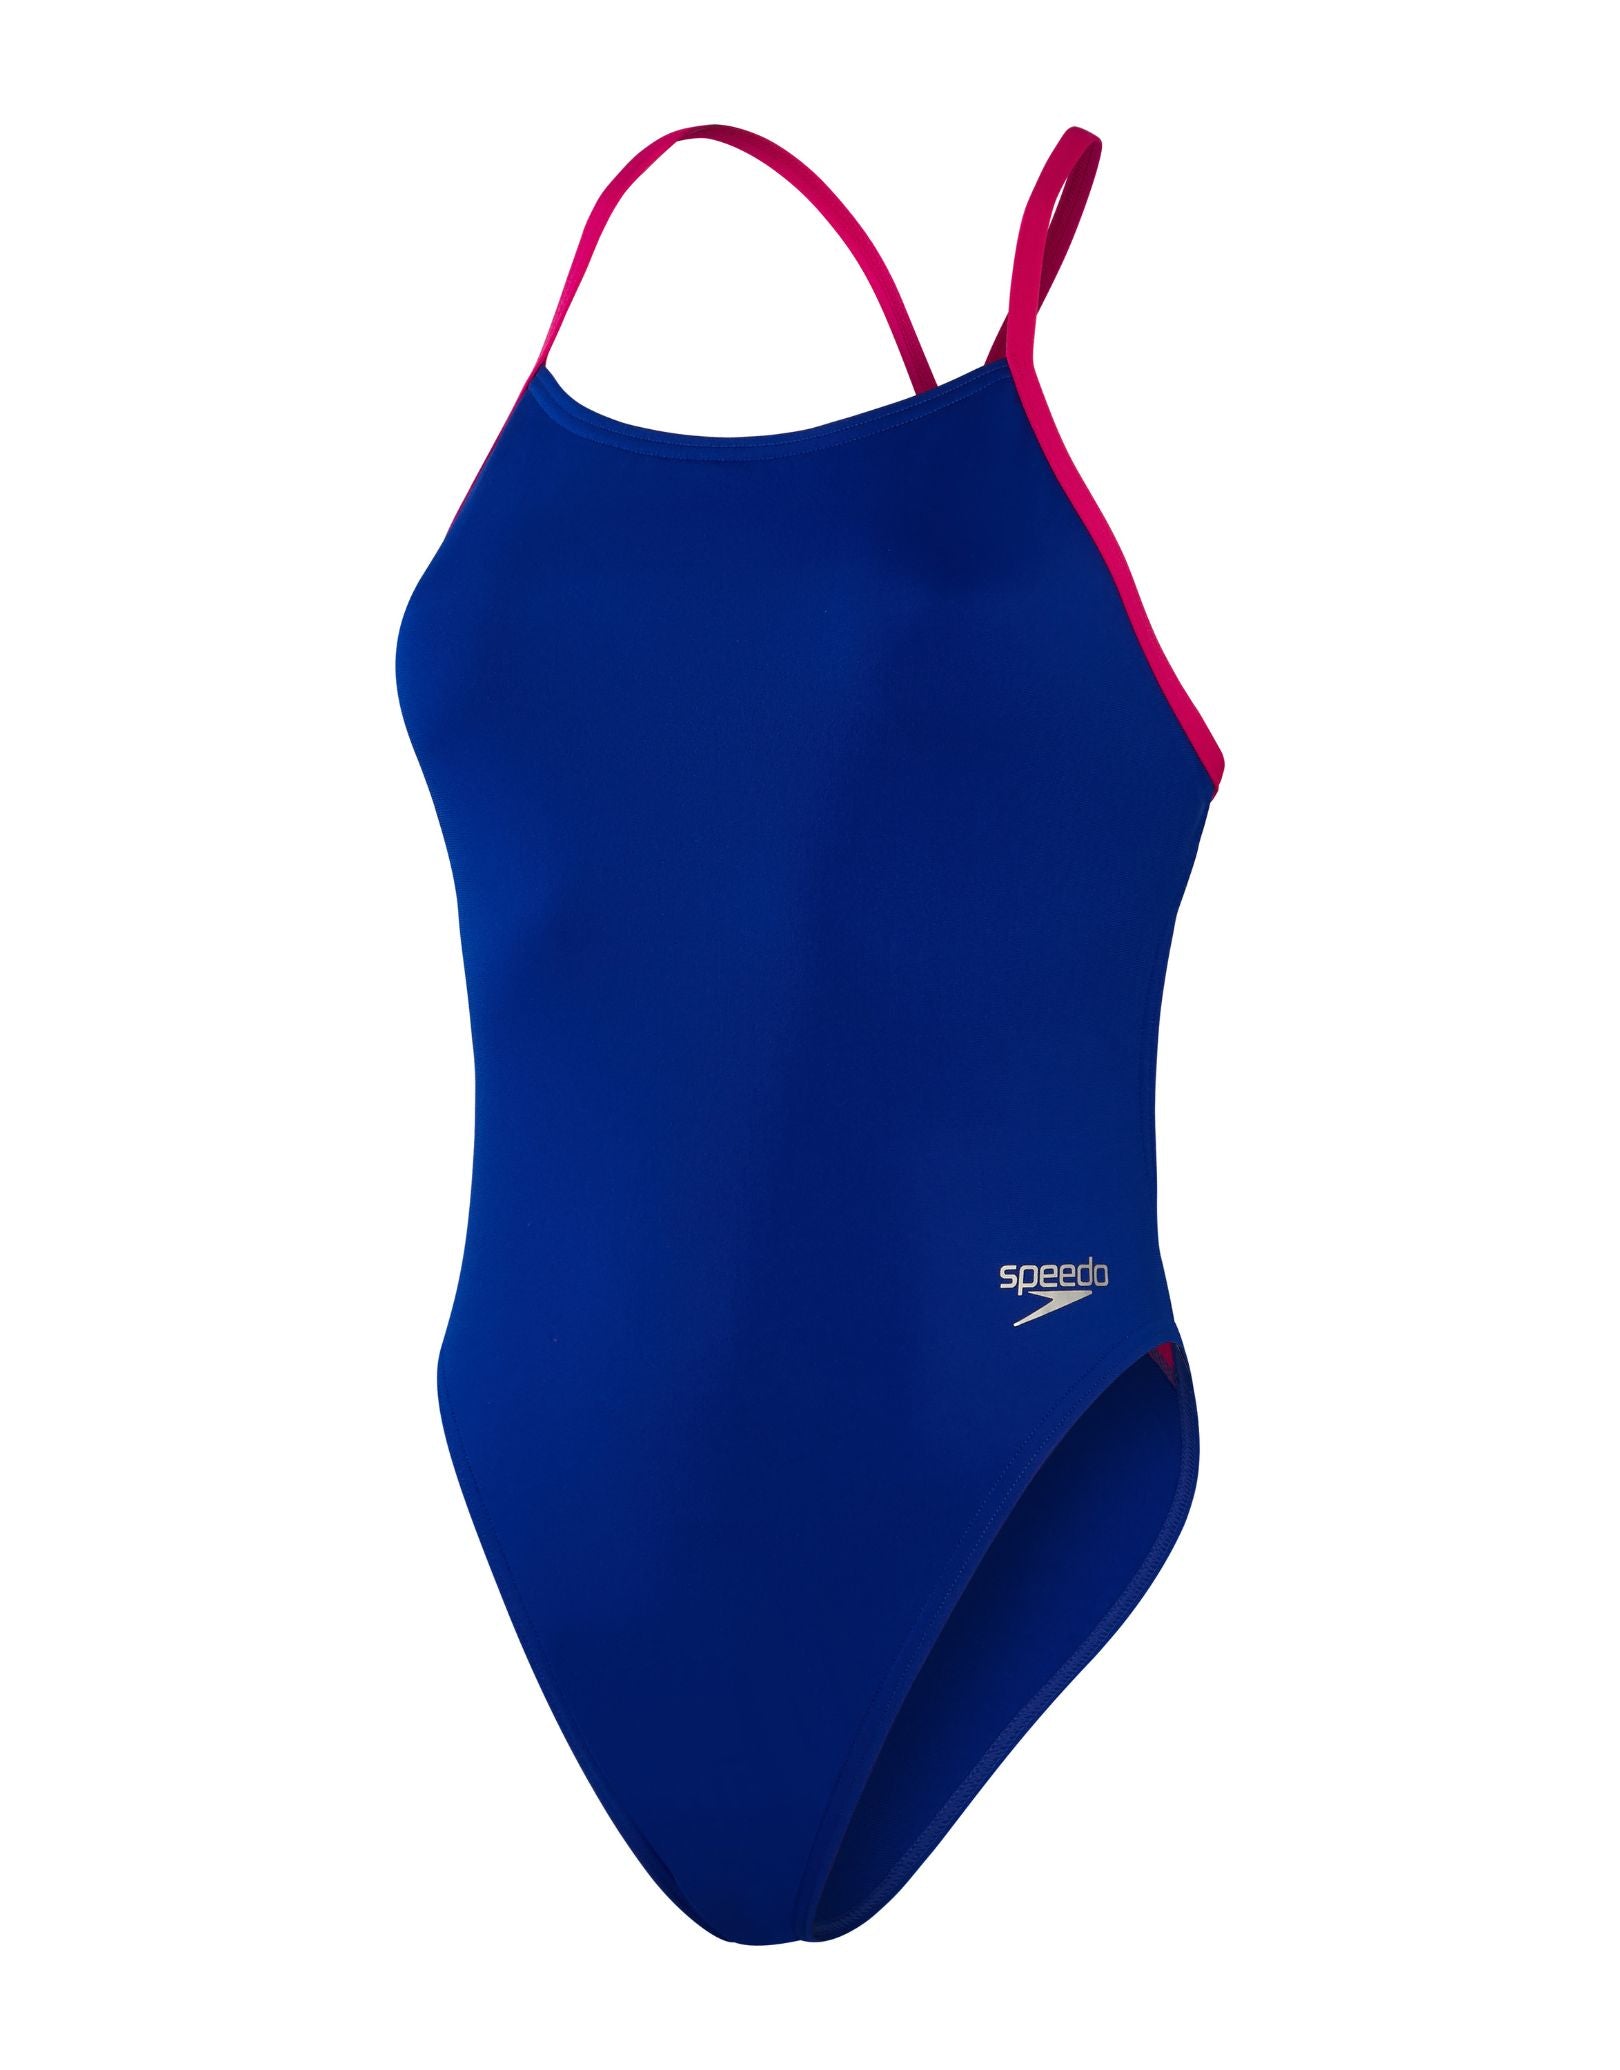 Speedo Solid Tieback Swimsuit - Blue/Pink | Simply Swim | Simply Swim UK